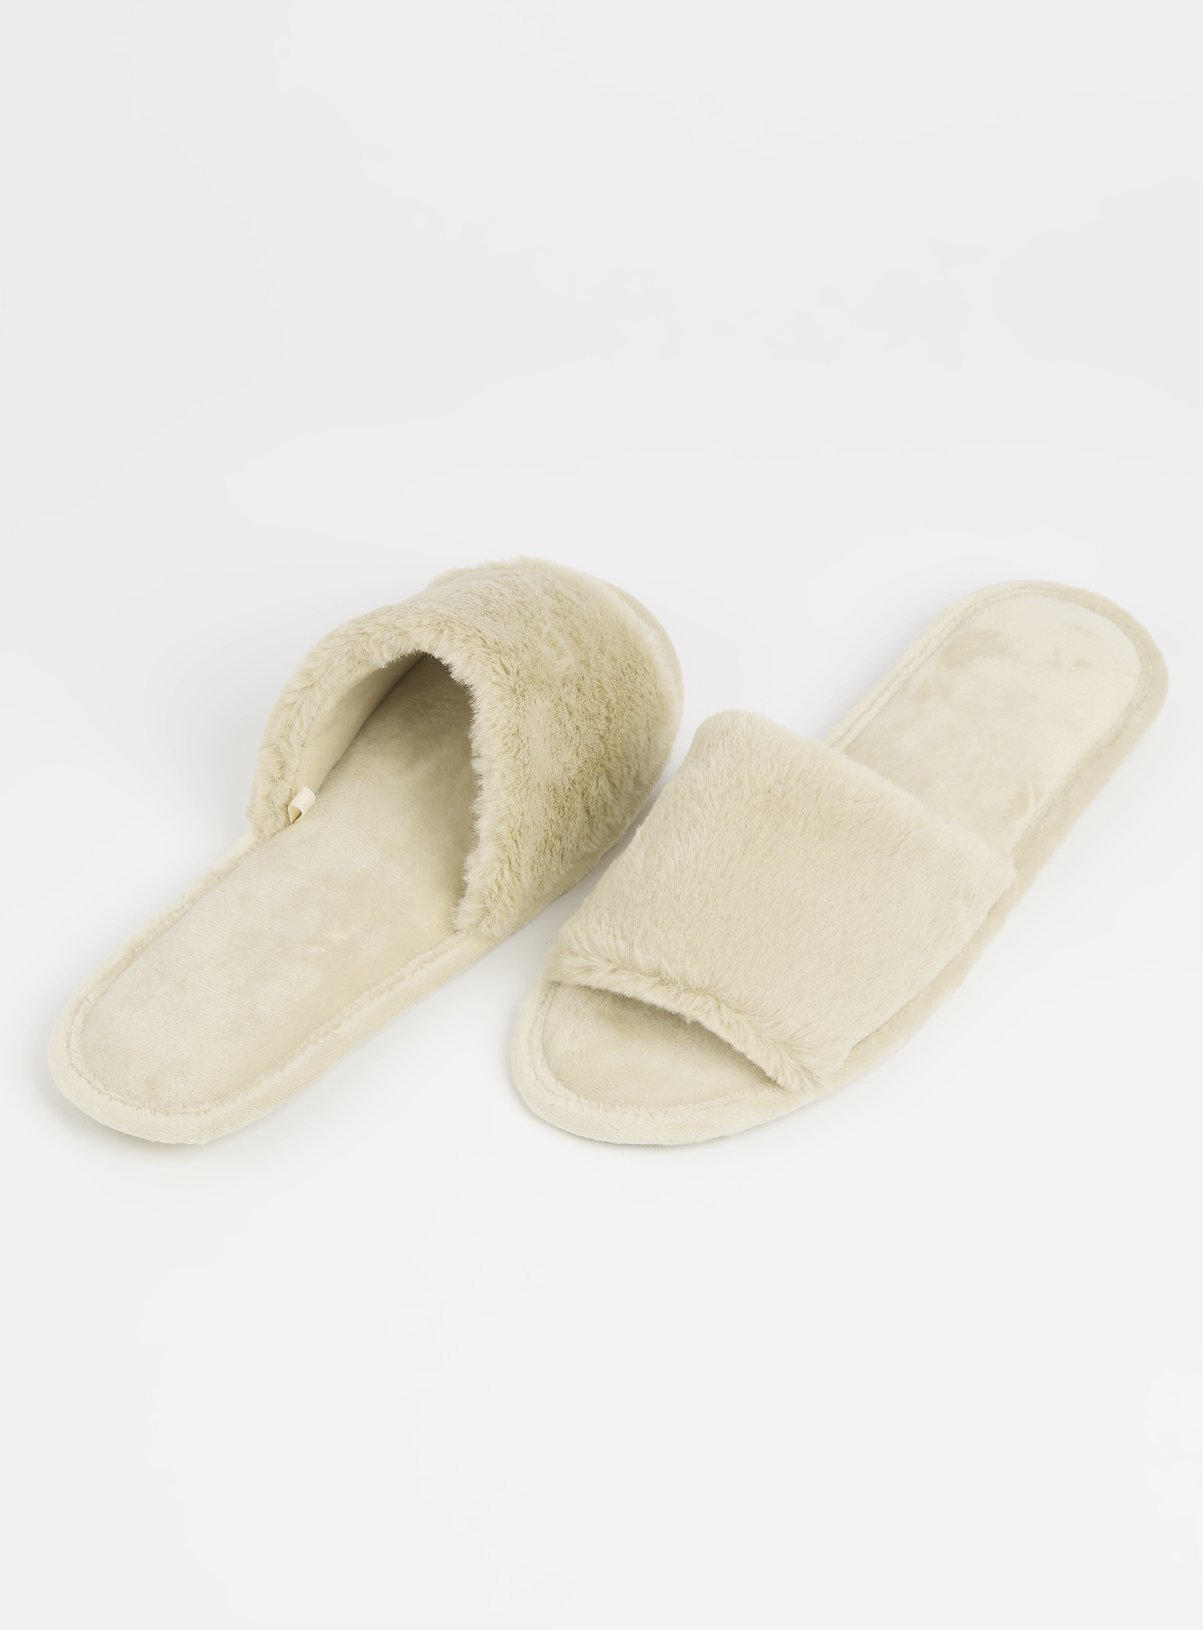 sainsbury slippers womens